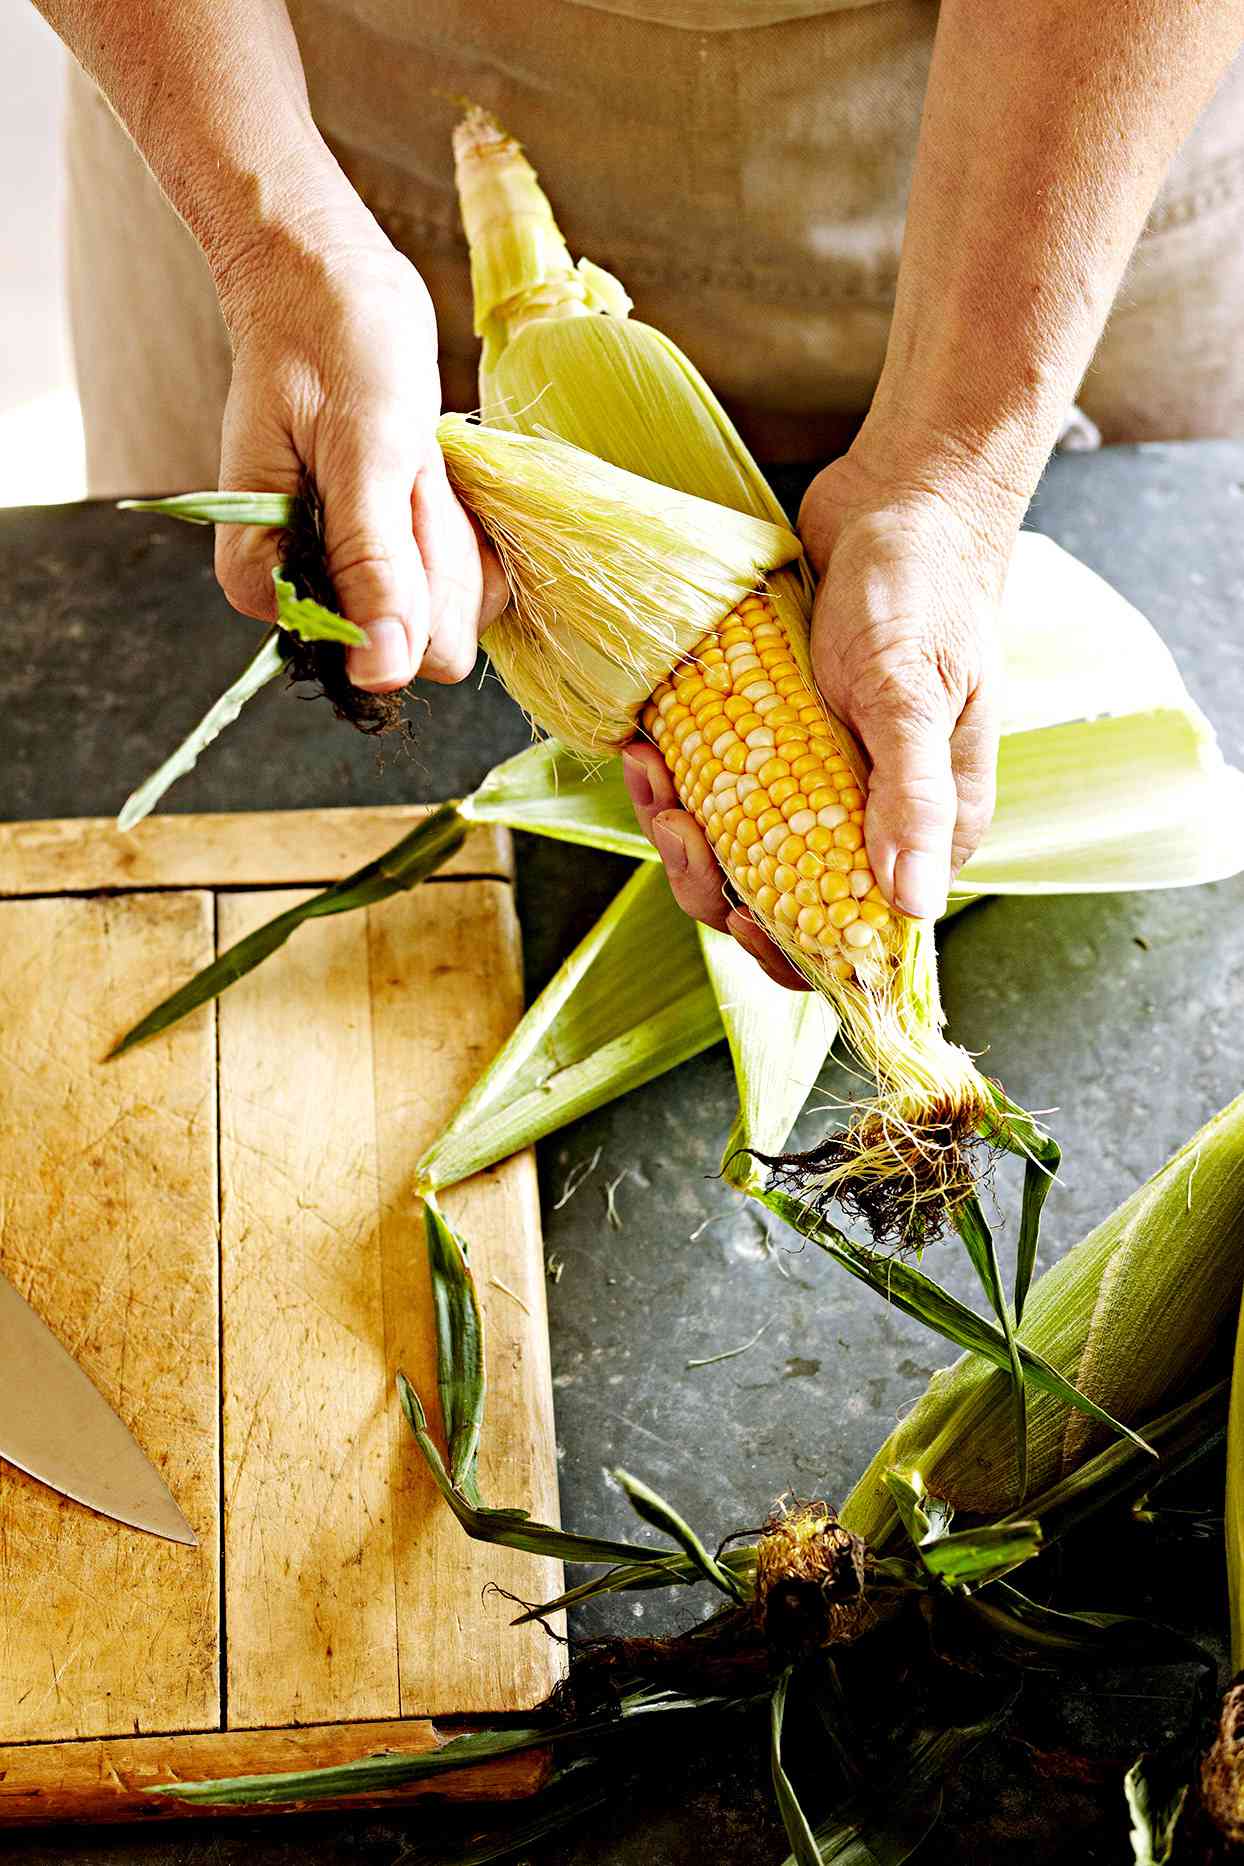 Person shucking corn near cutting board